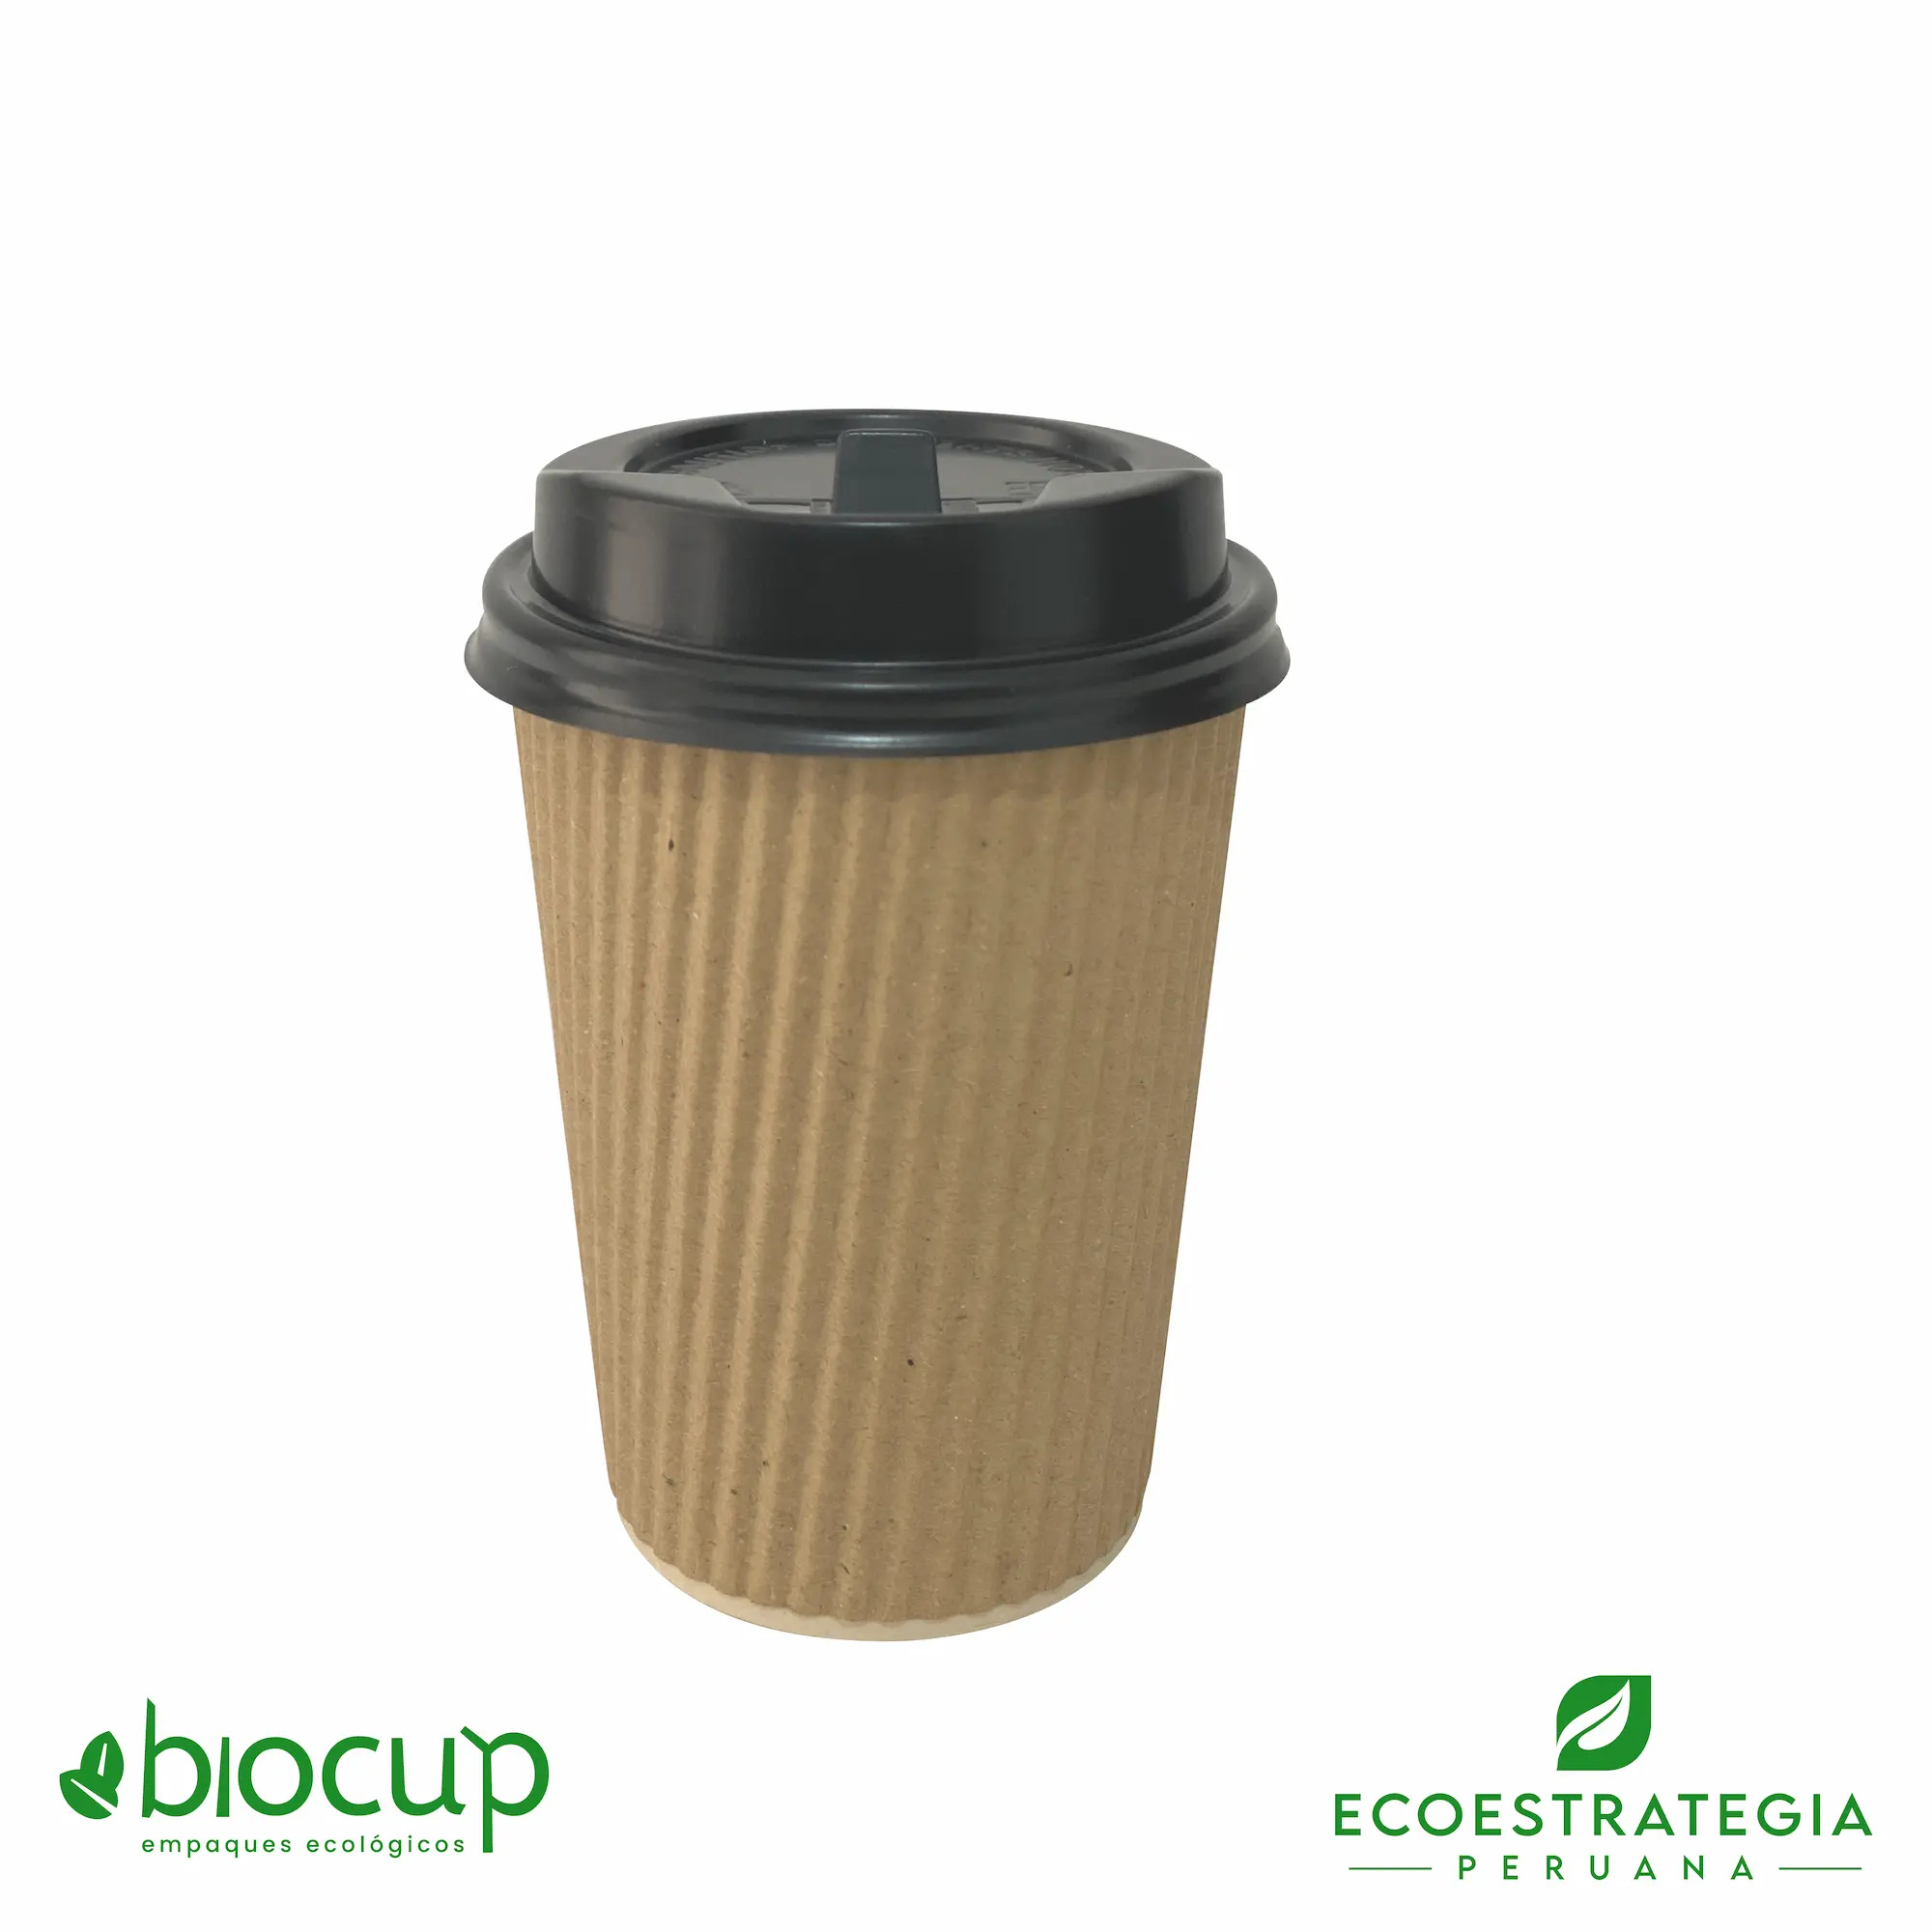 Este vaso corrugado de 12 oz es un producto de materiales biodegradables, hecho a base de fibra de bambú. Cotiza tus vasos para bebidas frías o calientes